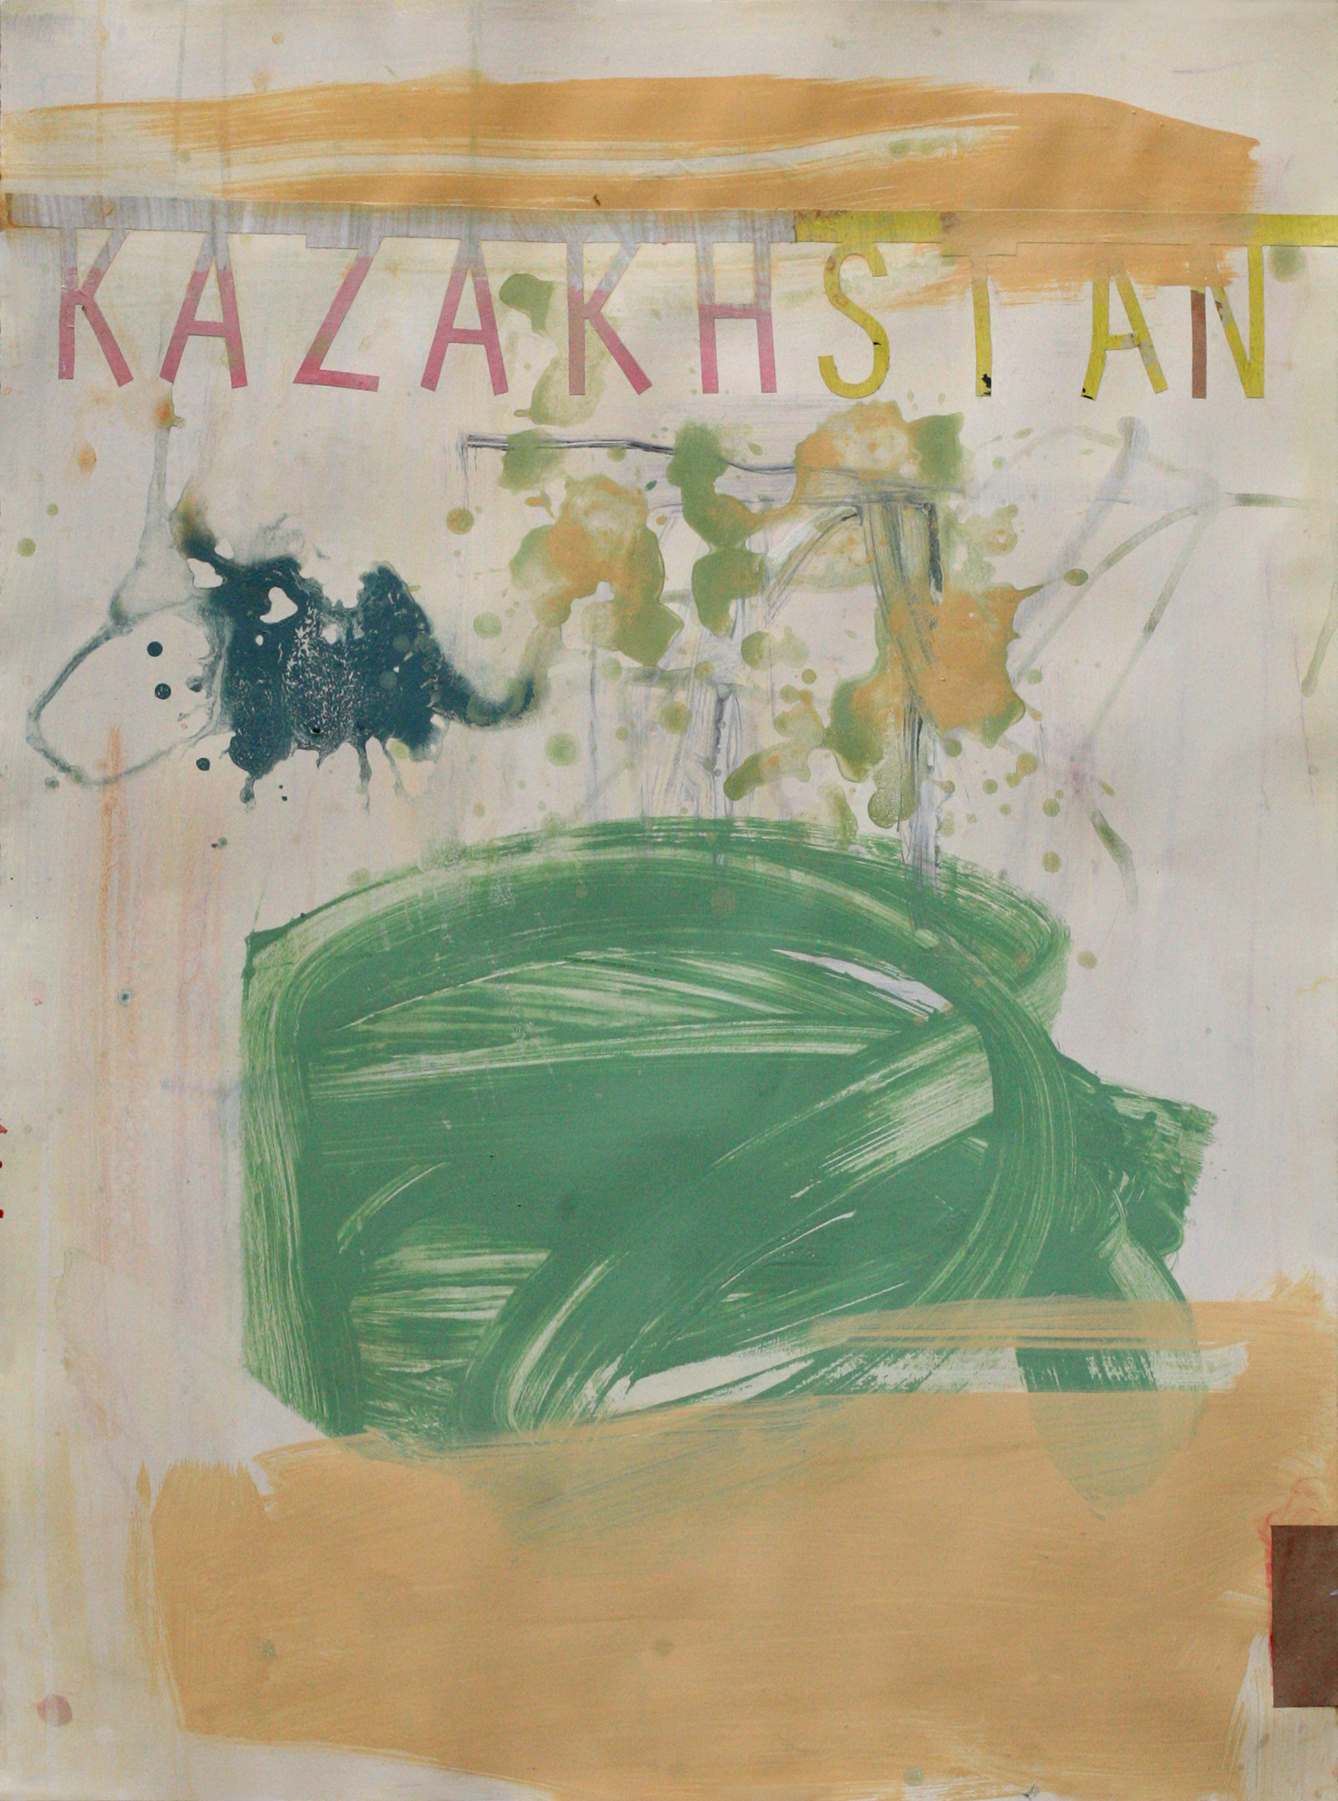 Kazakhstan, acrylic on paper on board, 30" x 22"